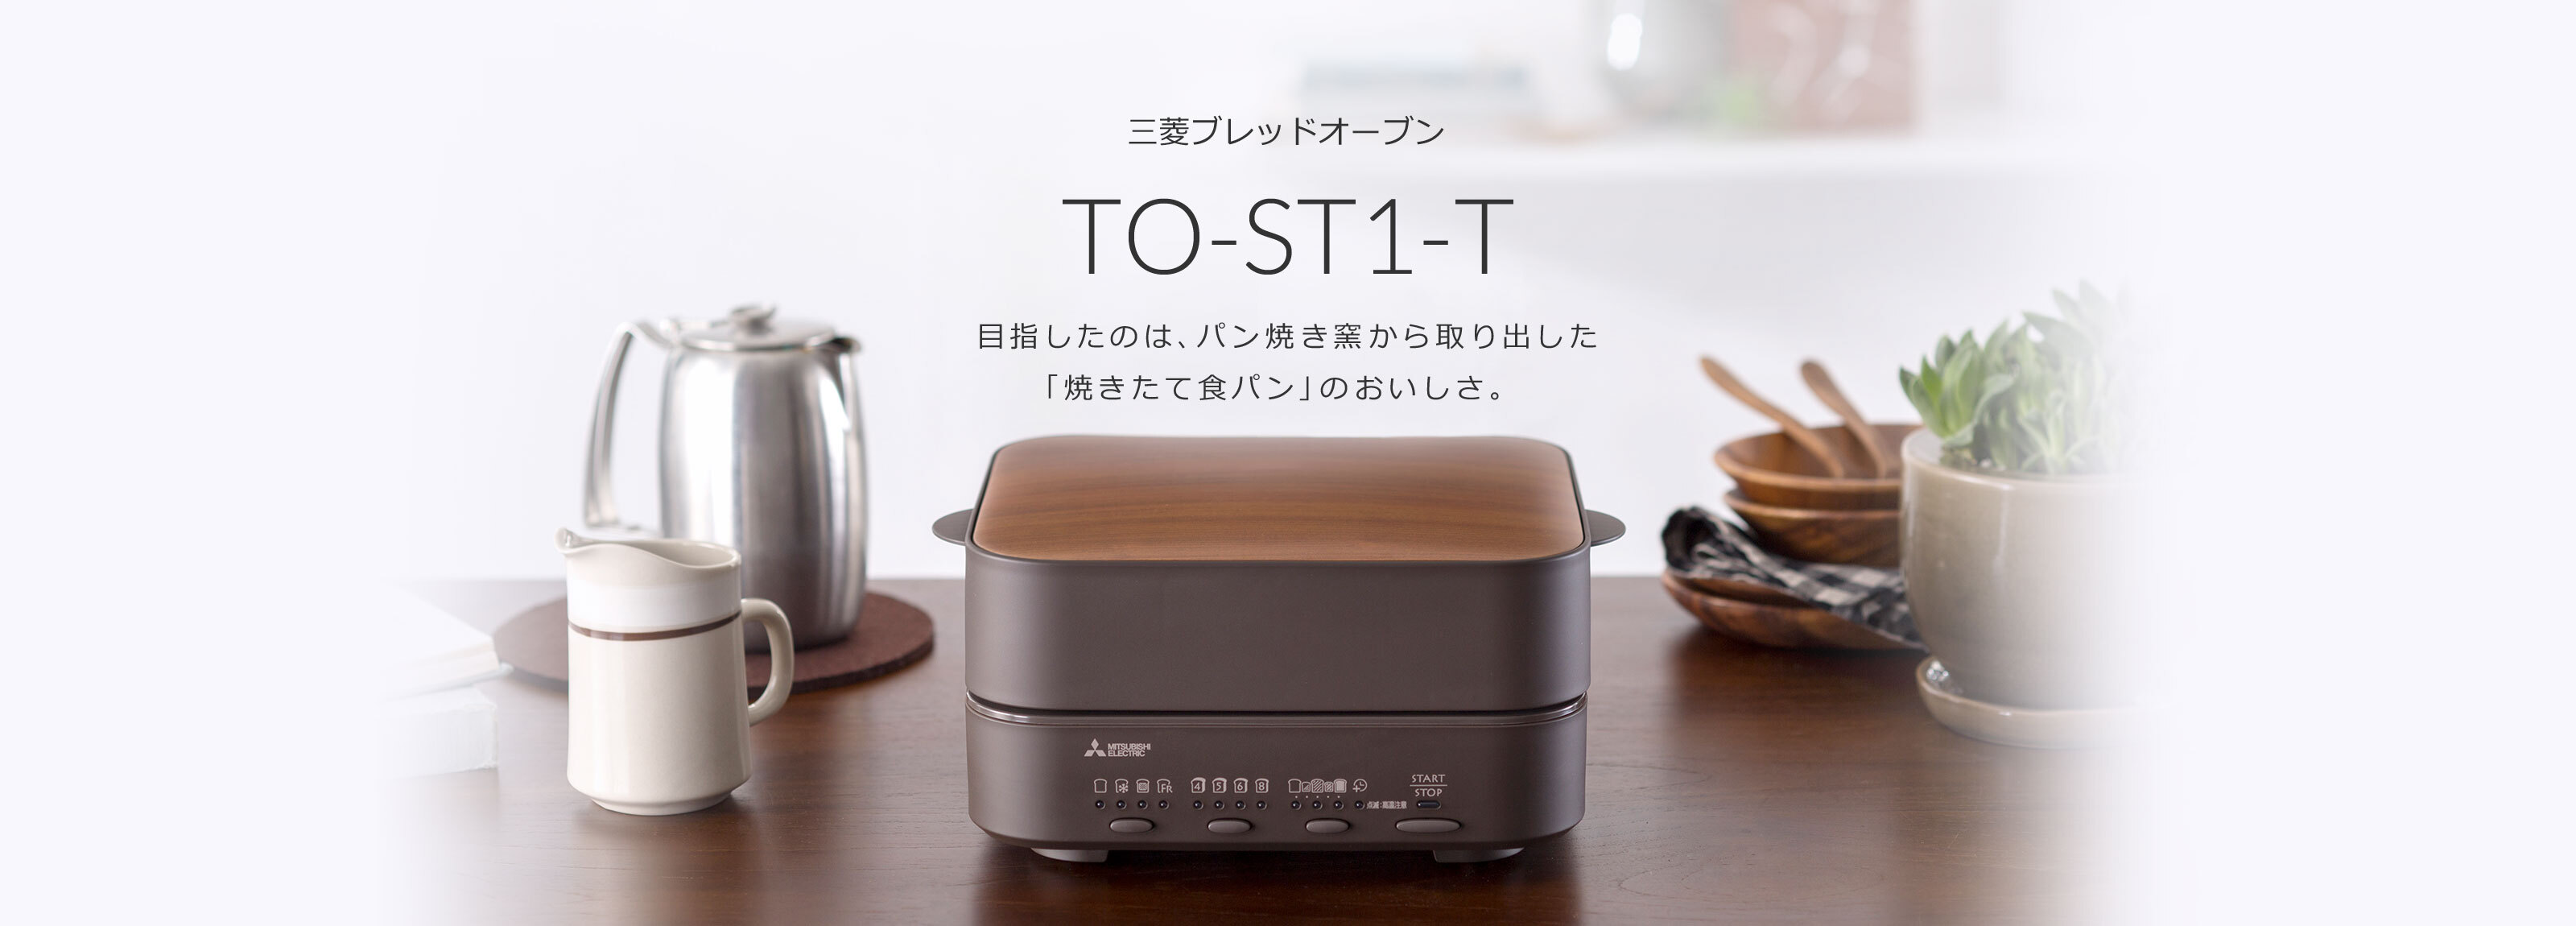 新品未使用 三菱ブレッドオーブン MITSUBISHI TO-ST1-T-